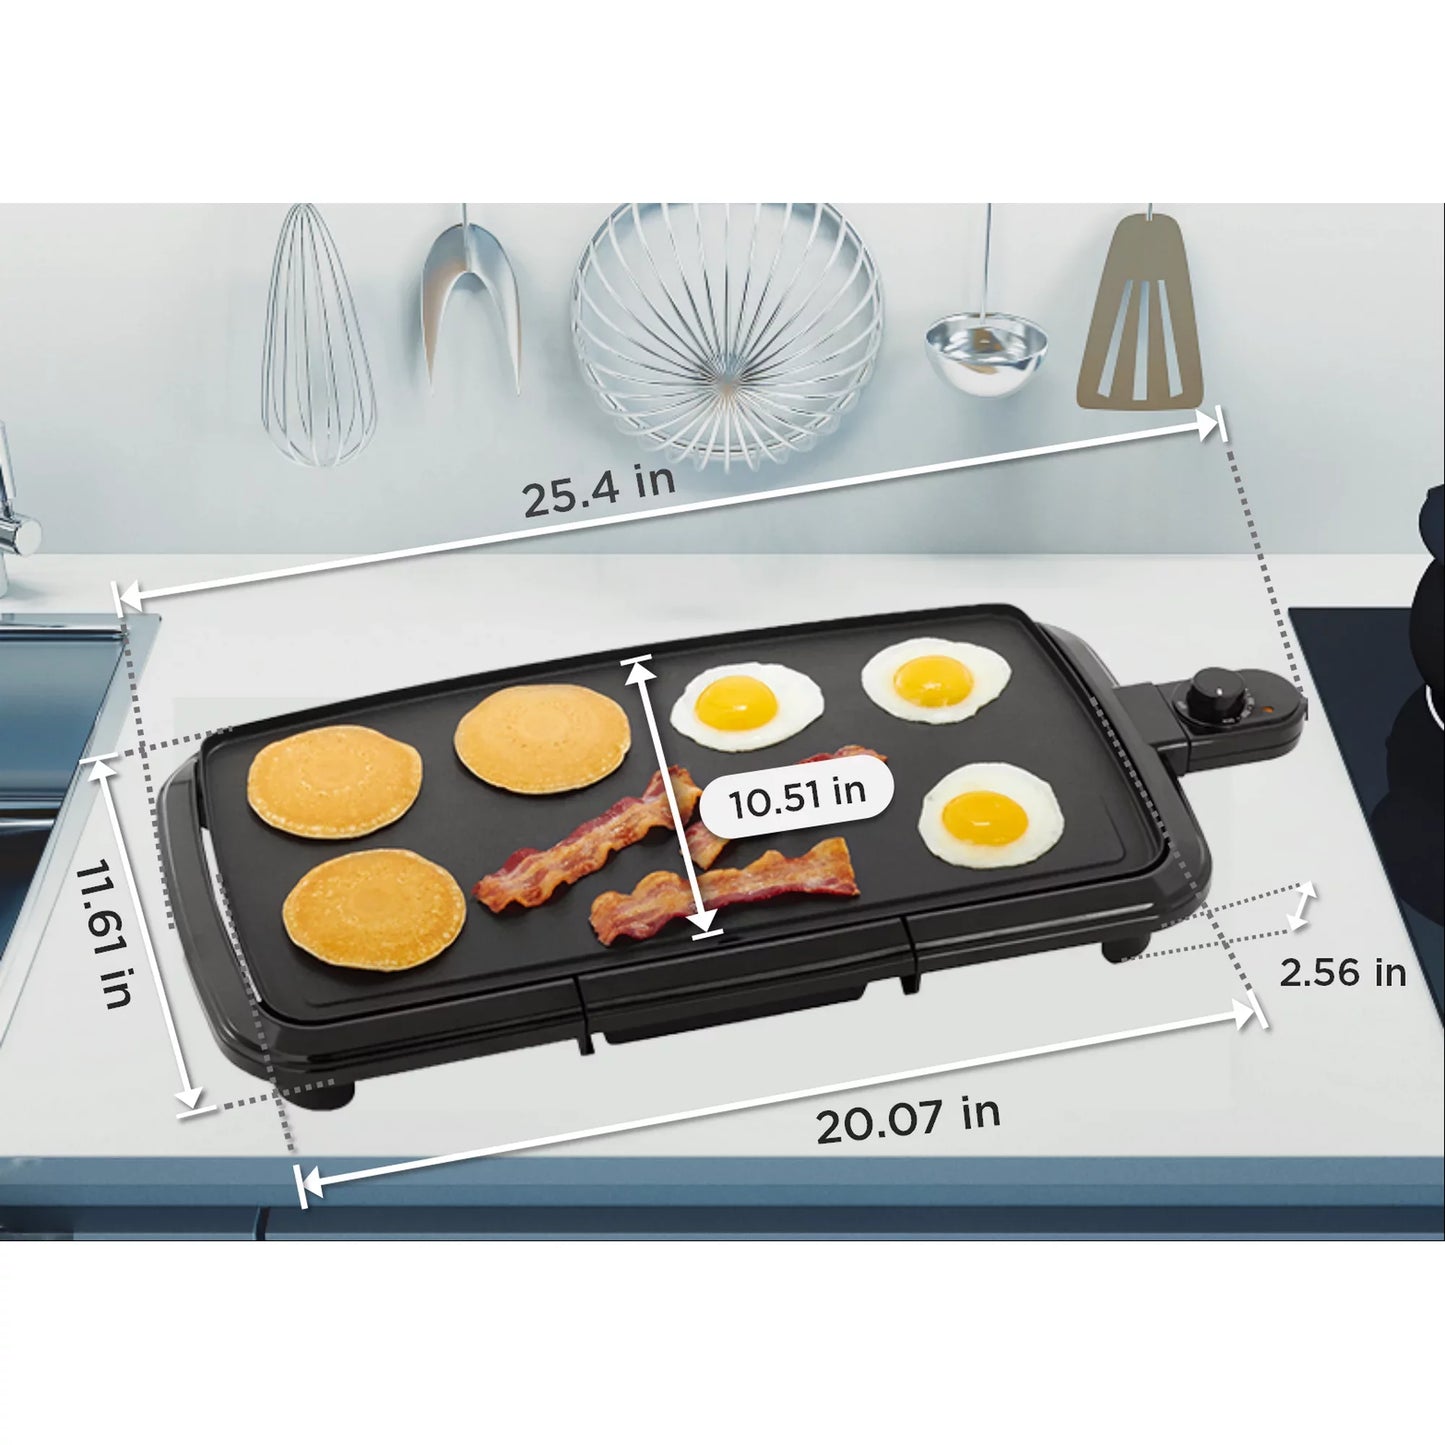 20" Black Griddle with Adjustable Temperature Control - Dishwasher Safe